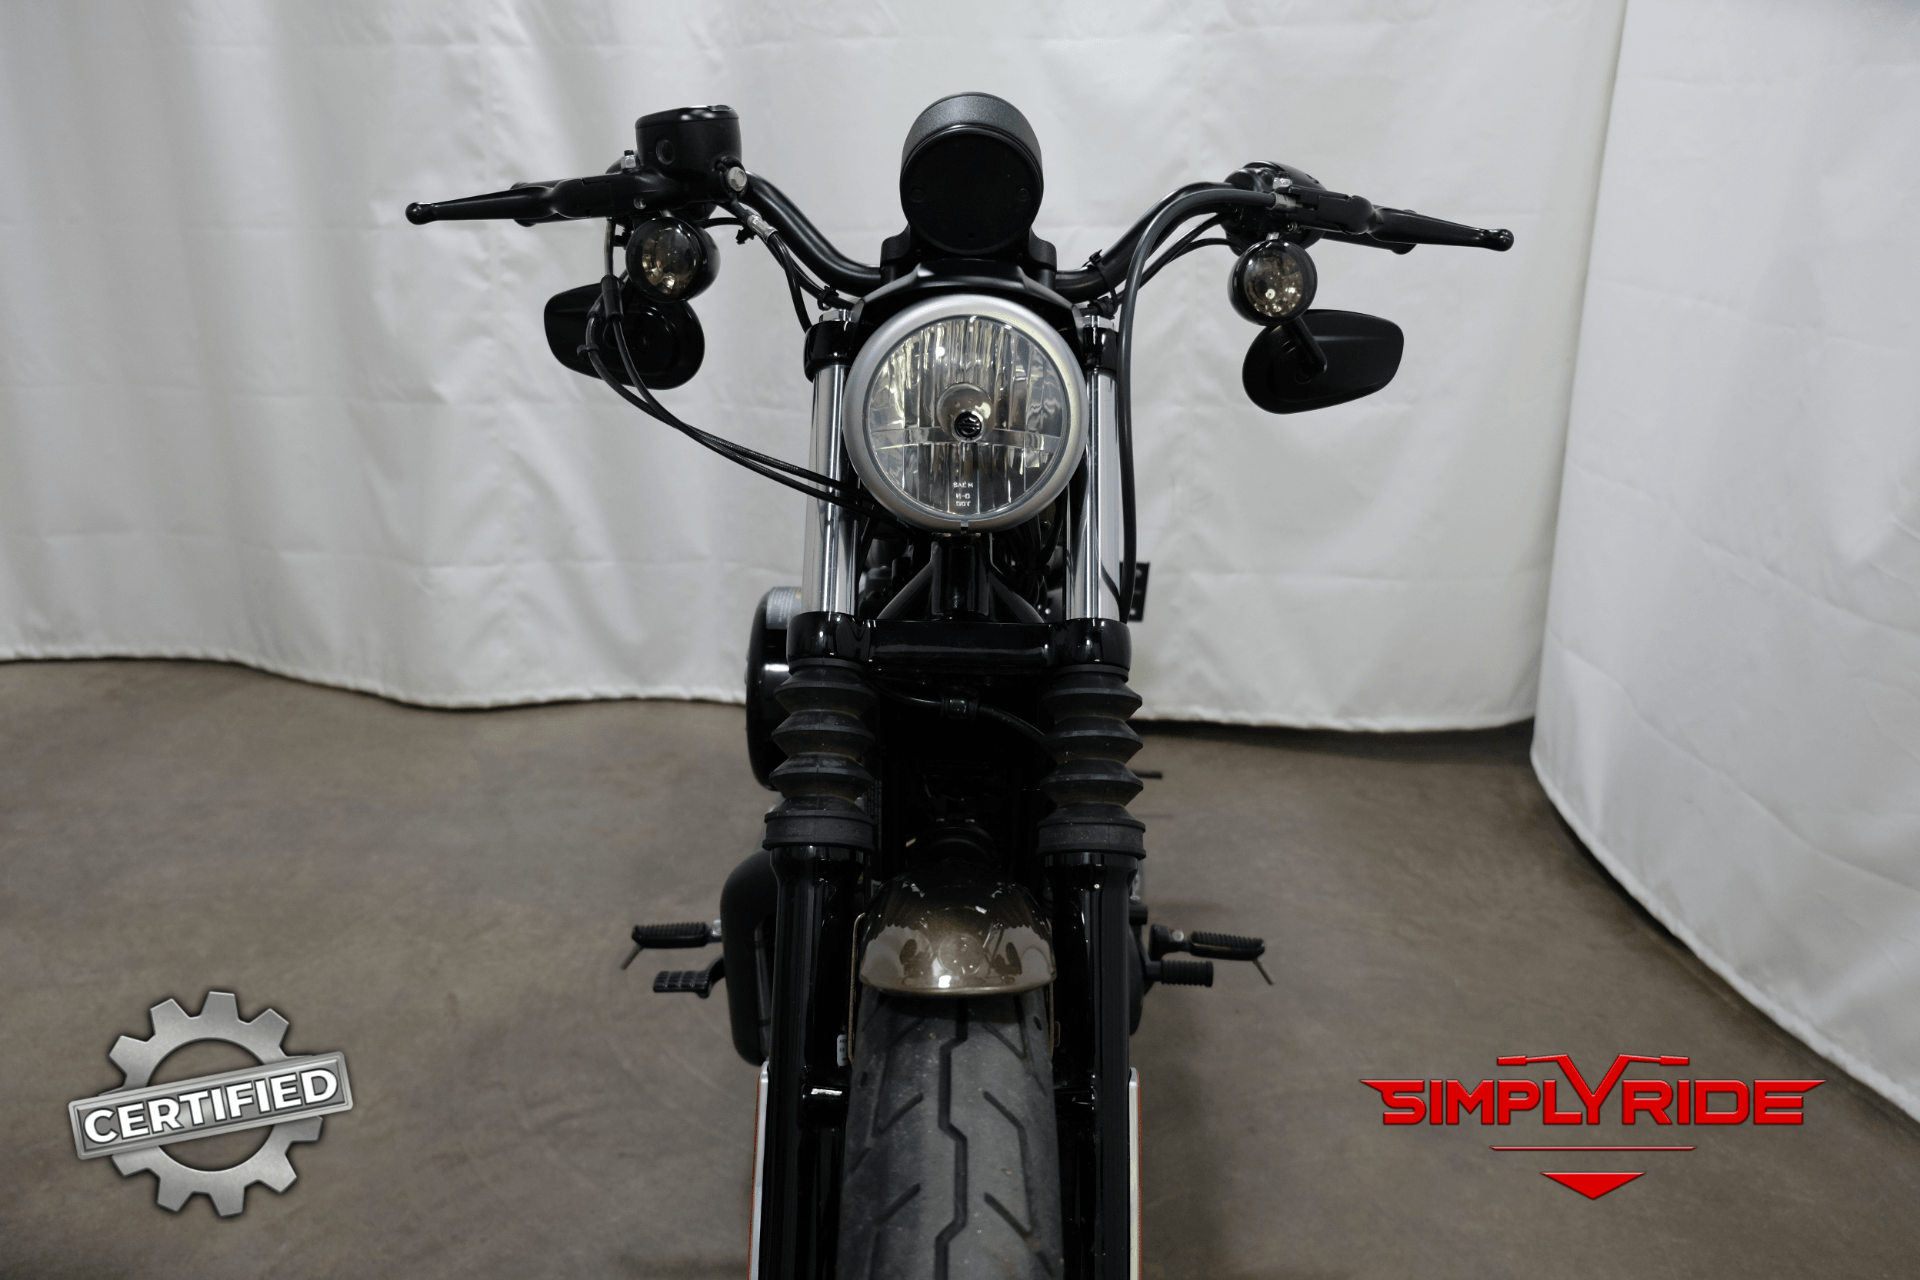 2017 Harley-Davidson Iron 883™ in Eden Prairie, Minnesota - Photo 16